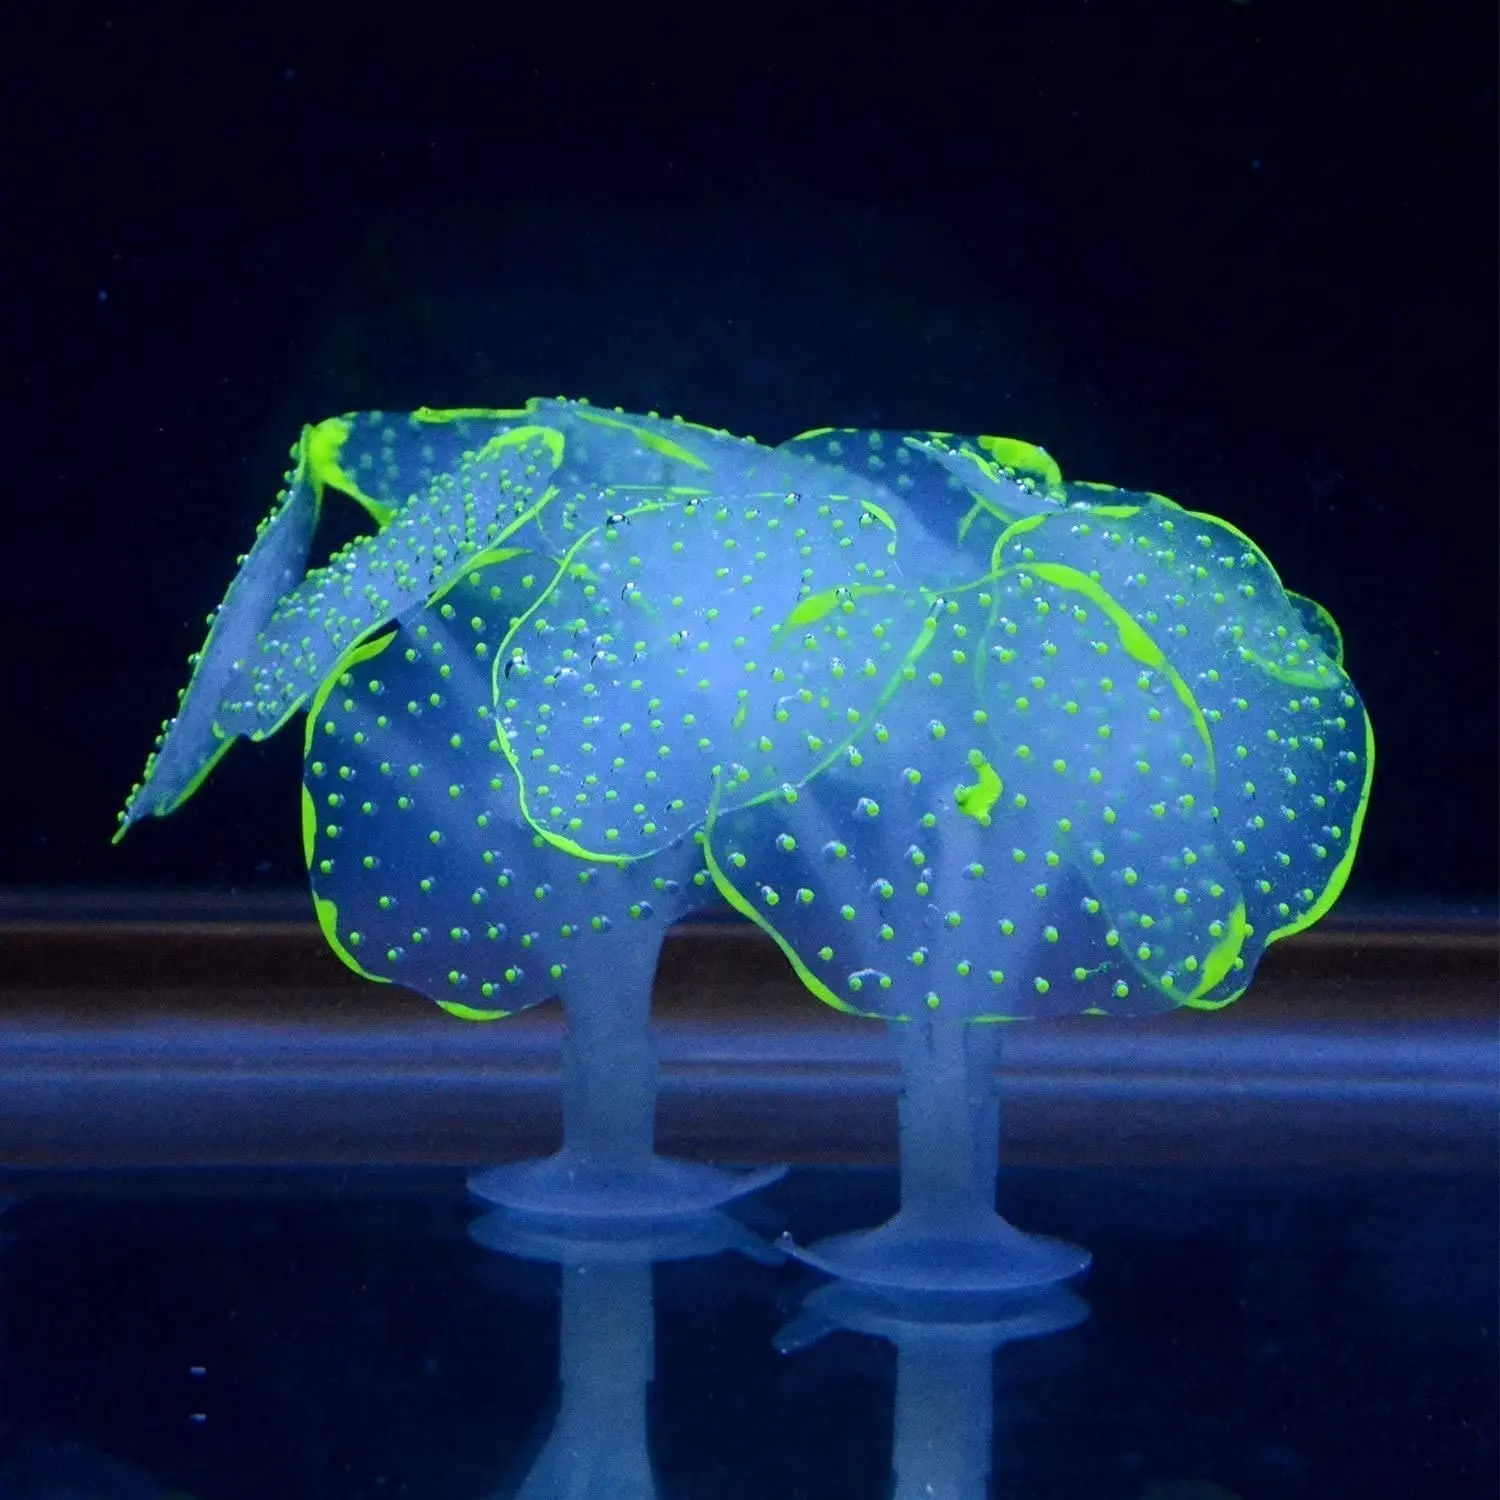 Glowing Silicone Artificial Coral Plant for Fish Tank Decor Aquarium Ornament